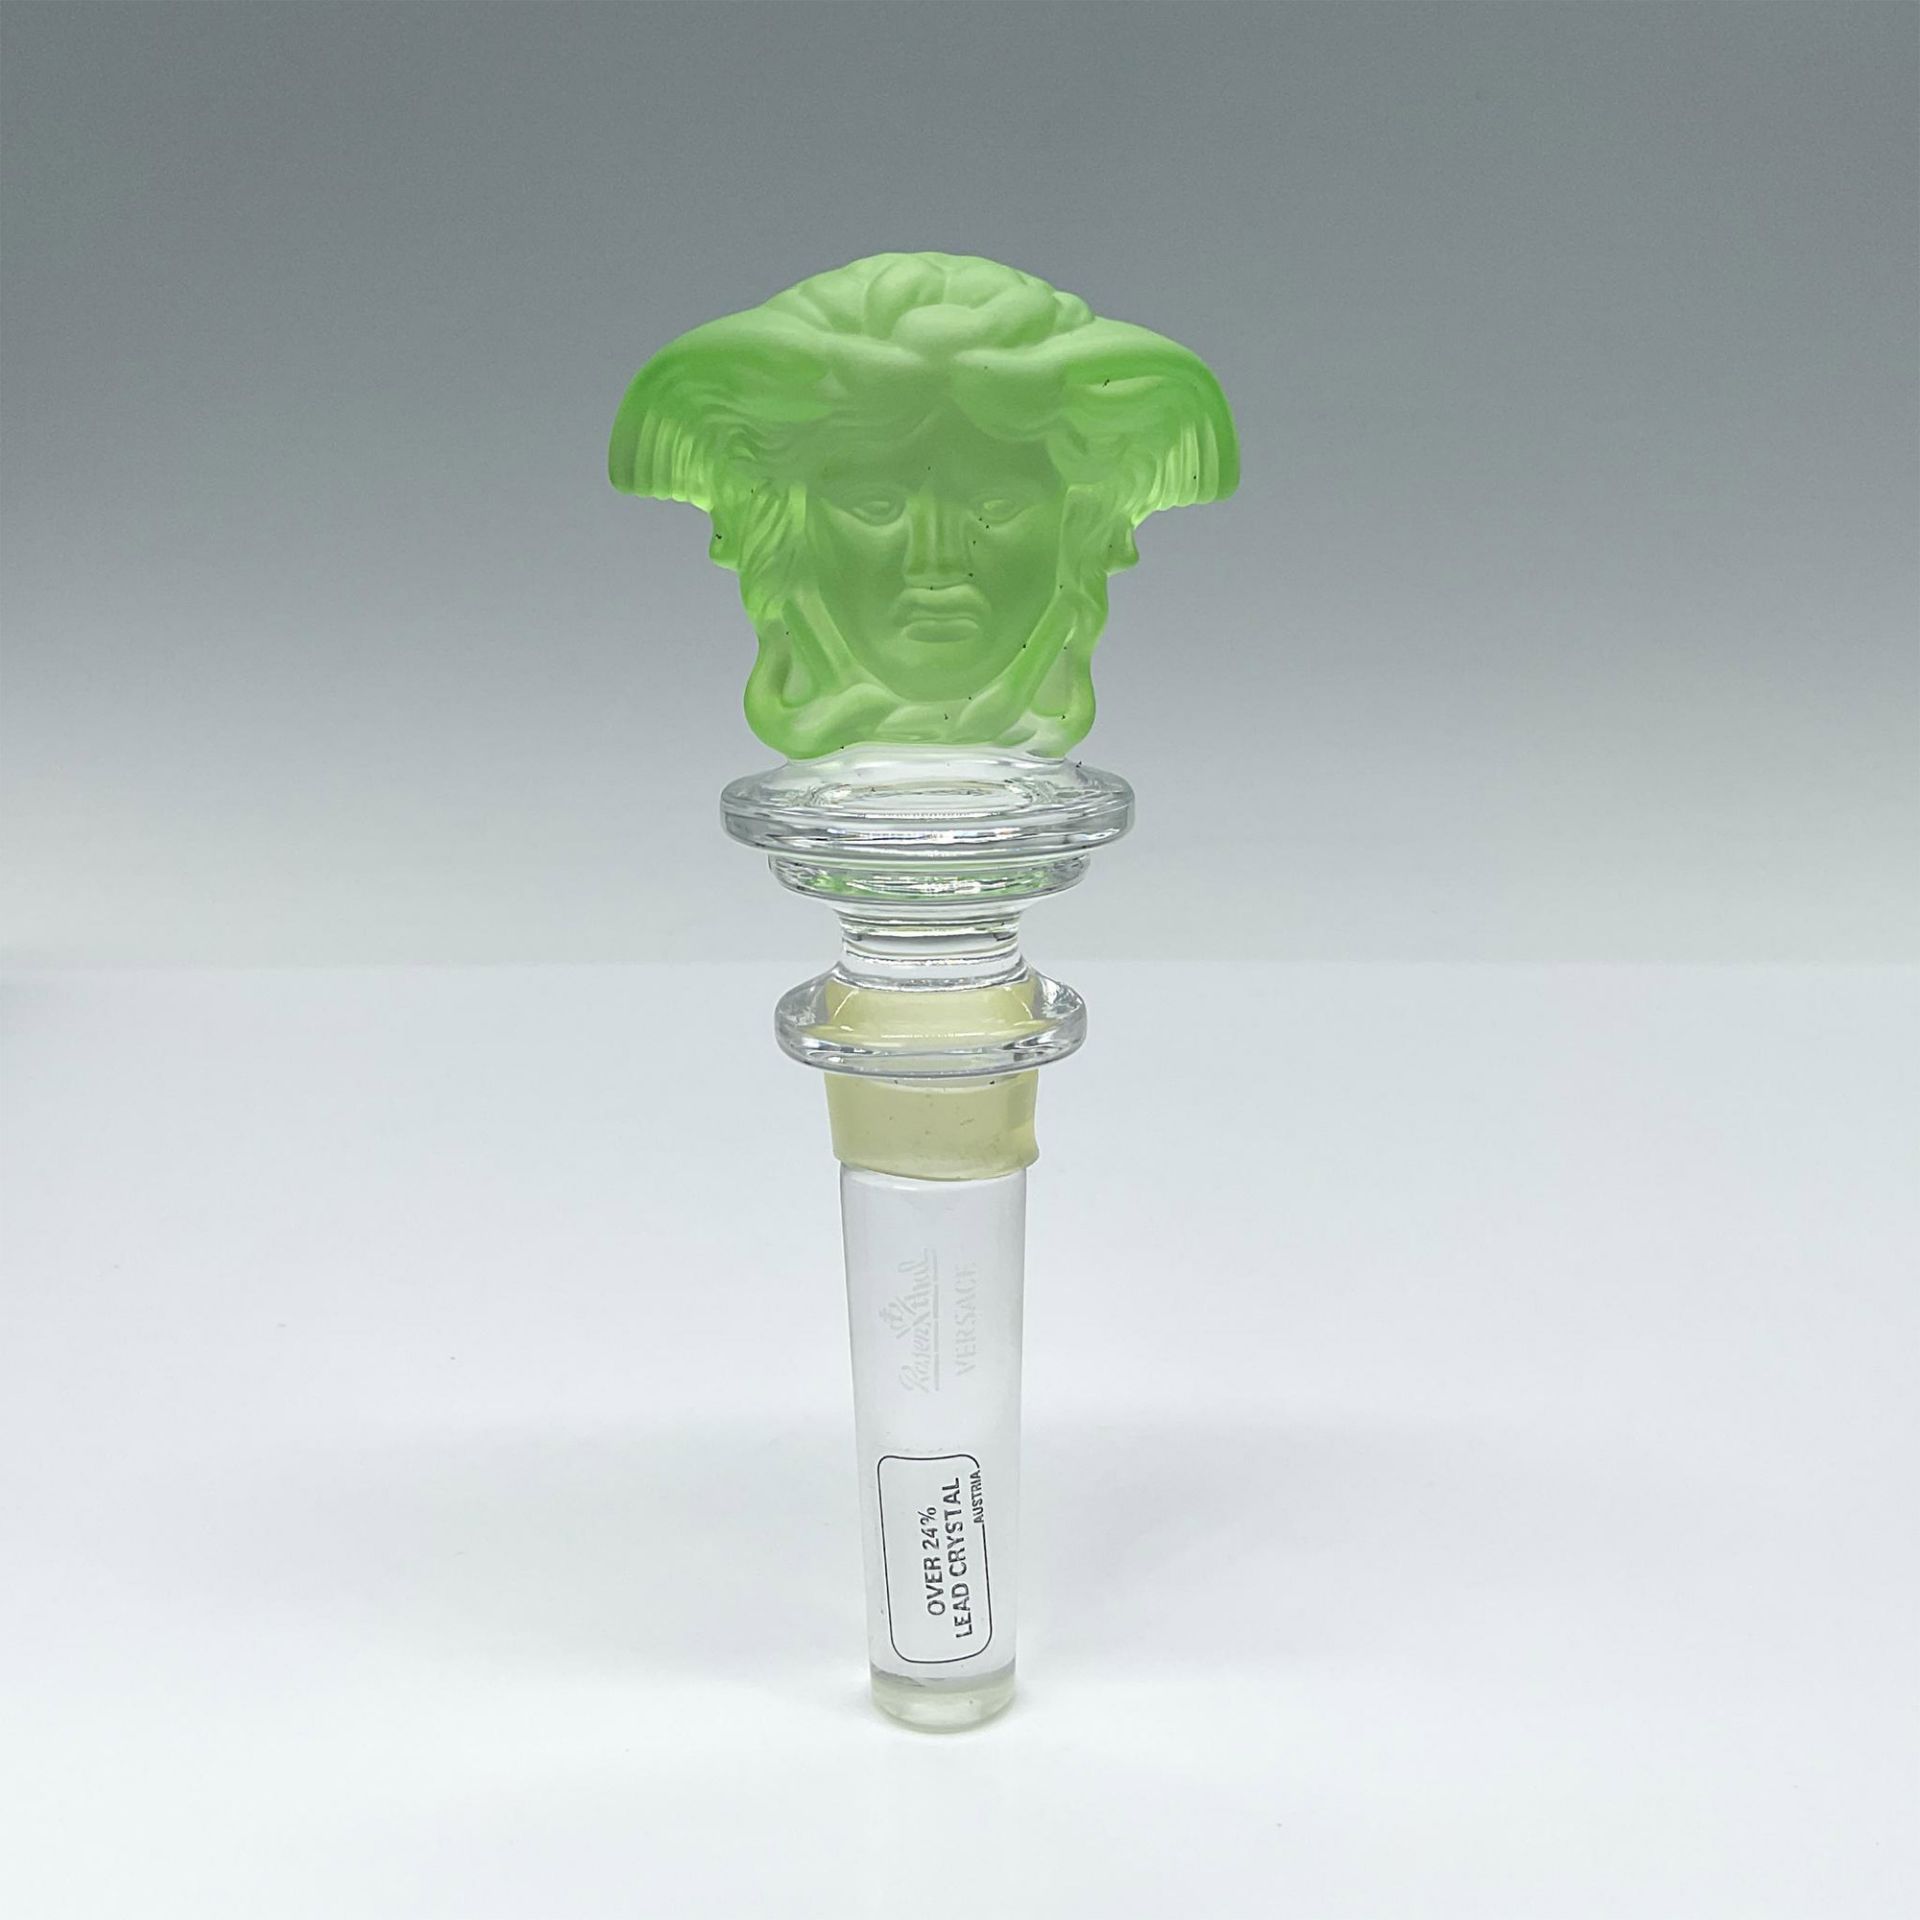 Rosenthal Versace Medusa Head Crystal Bottle Stopper, Green - Image 2 of 3